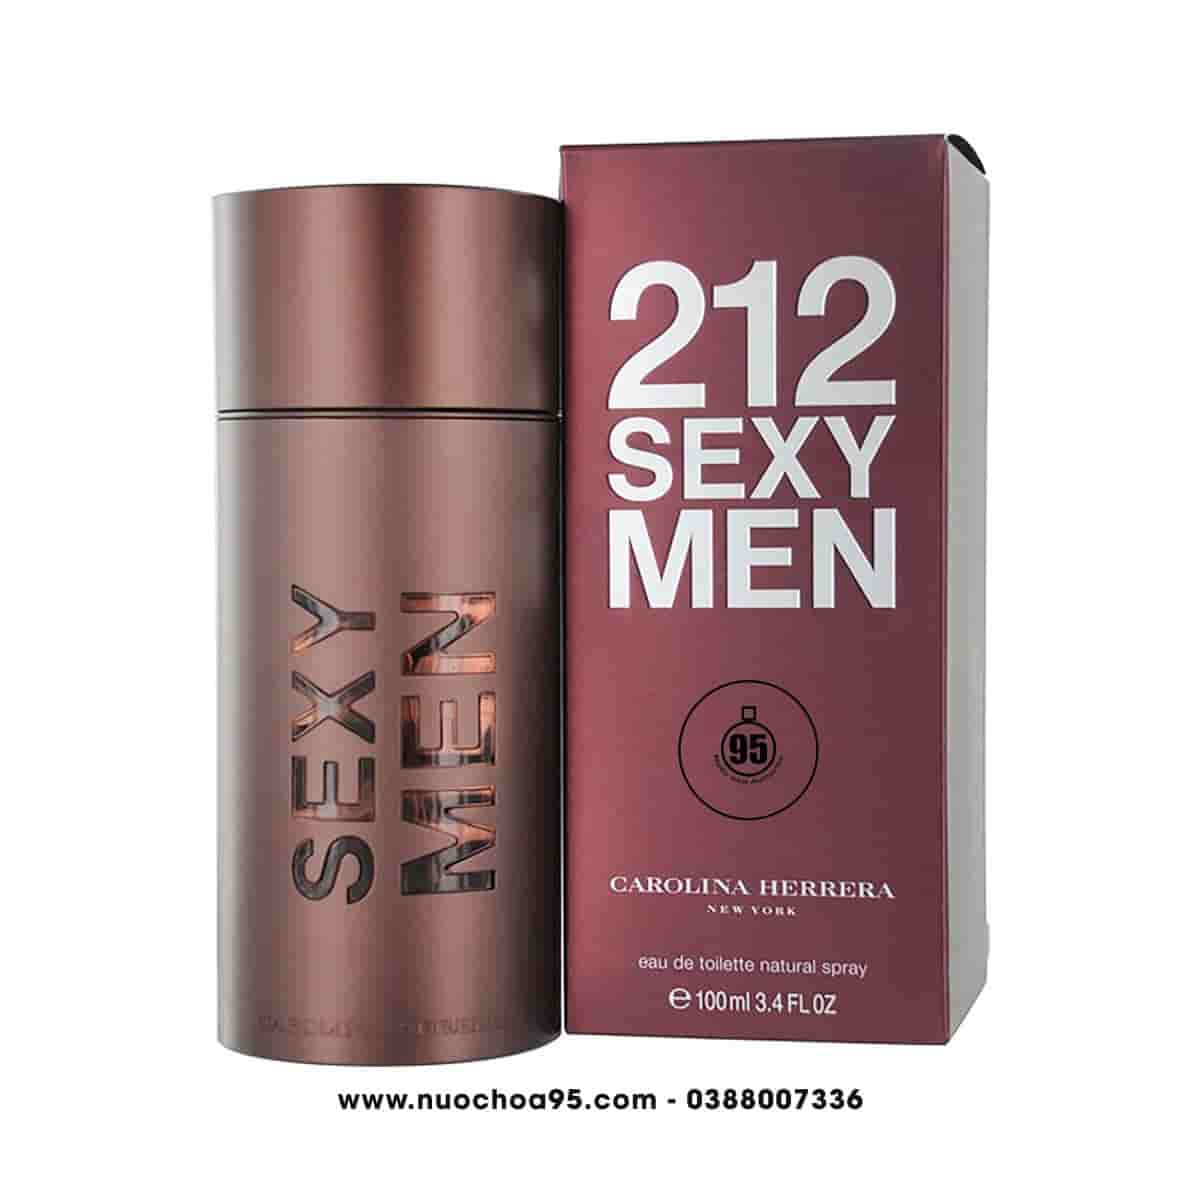 Nước hoa 212 Sexy Men